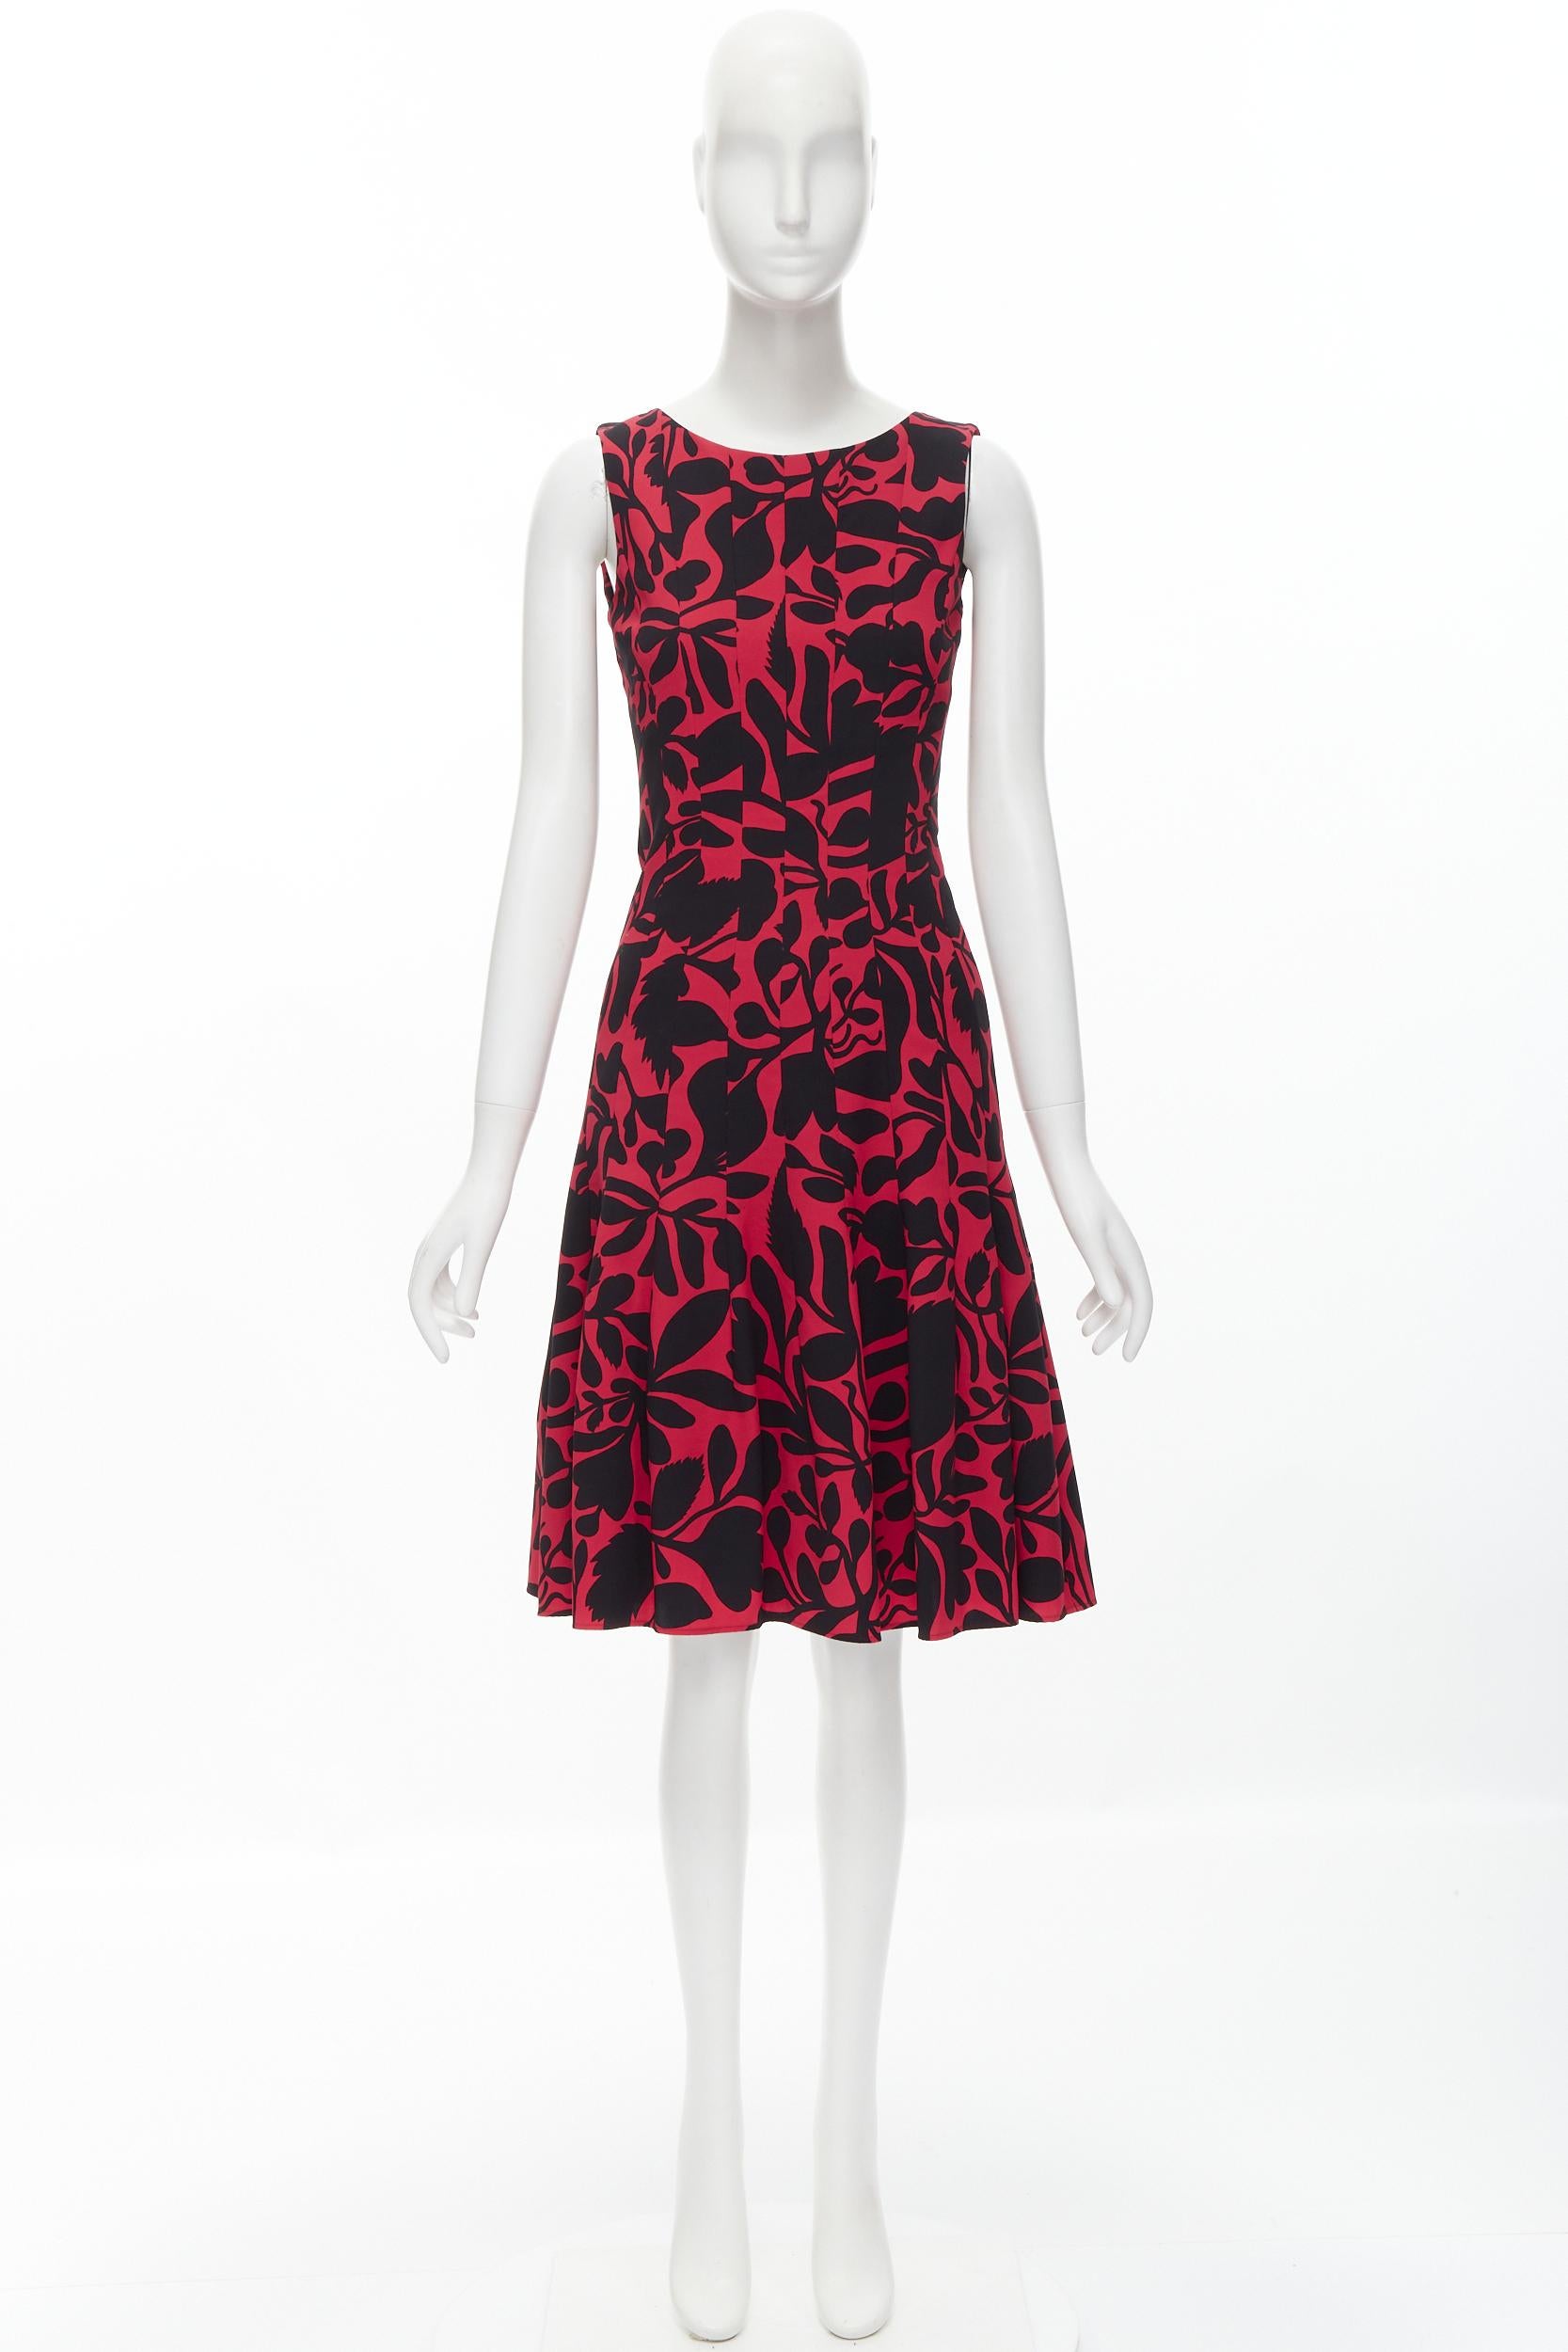 OSCAR DE LA RENTA red black floral print panelled fit flared dress XS For Sale 5